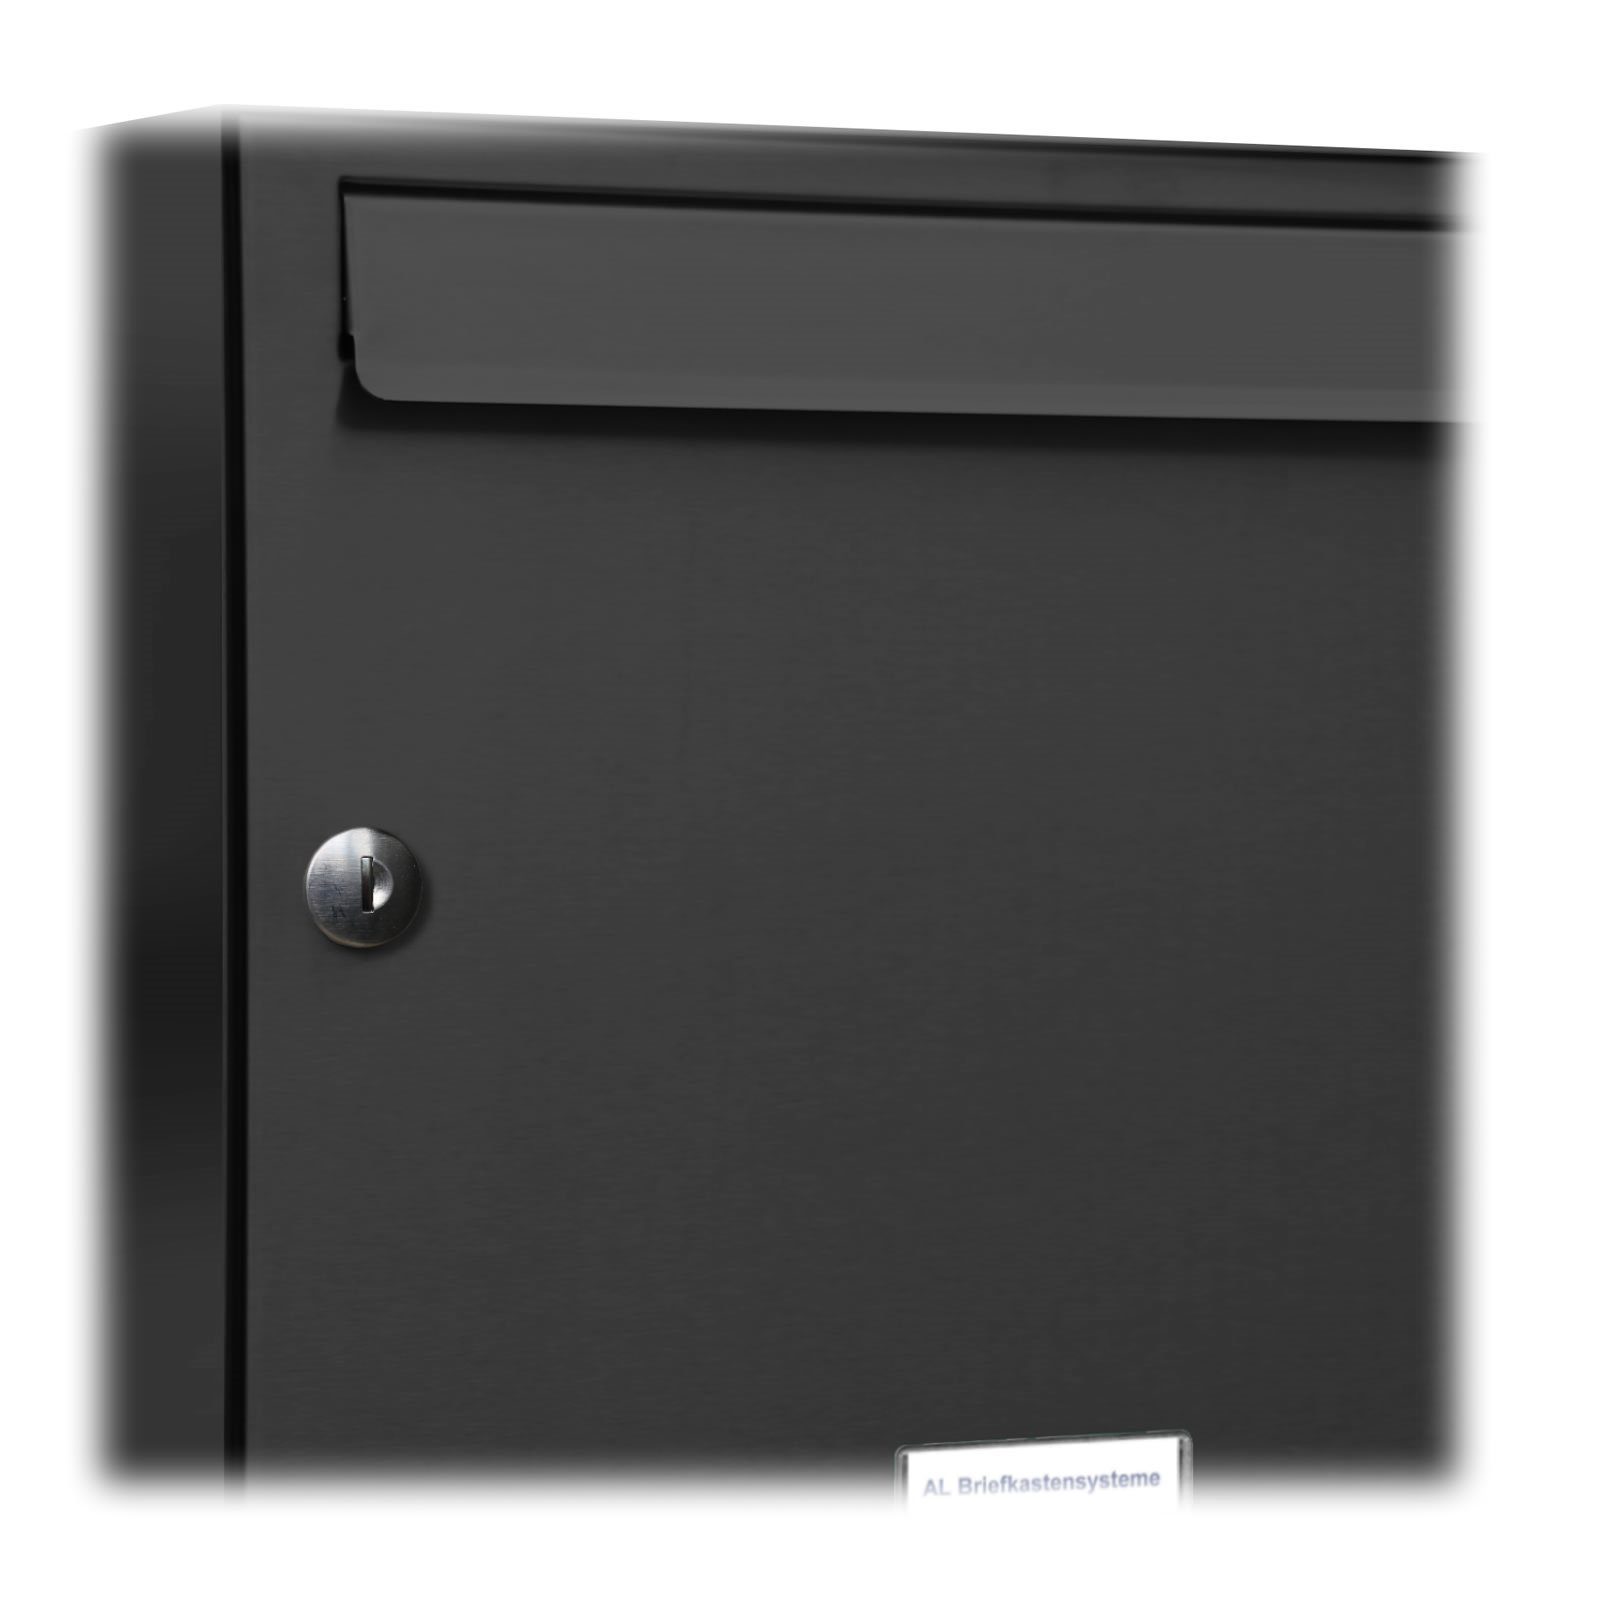 RAL Premium 6x3 7016 für Wandbriefkasten 18er Anthrazit Außen Farbe Briefkastensysteme Wand AL Briefkasten